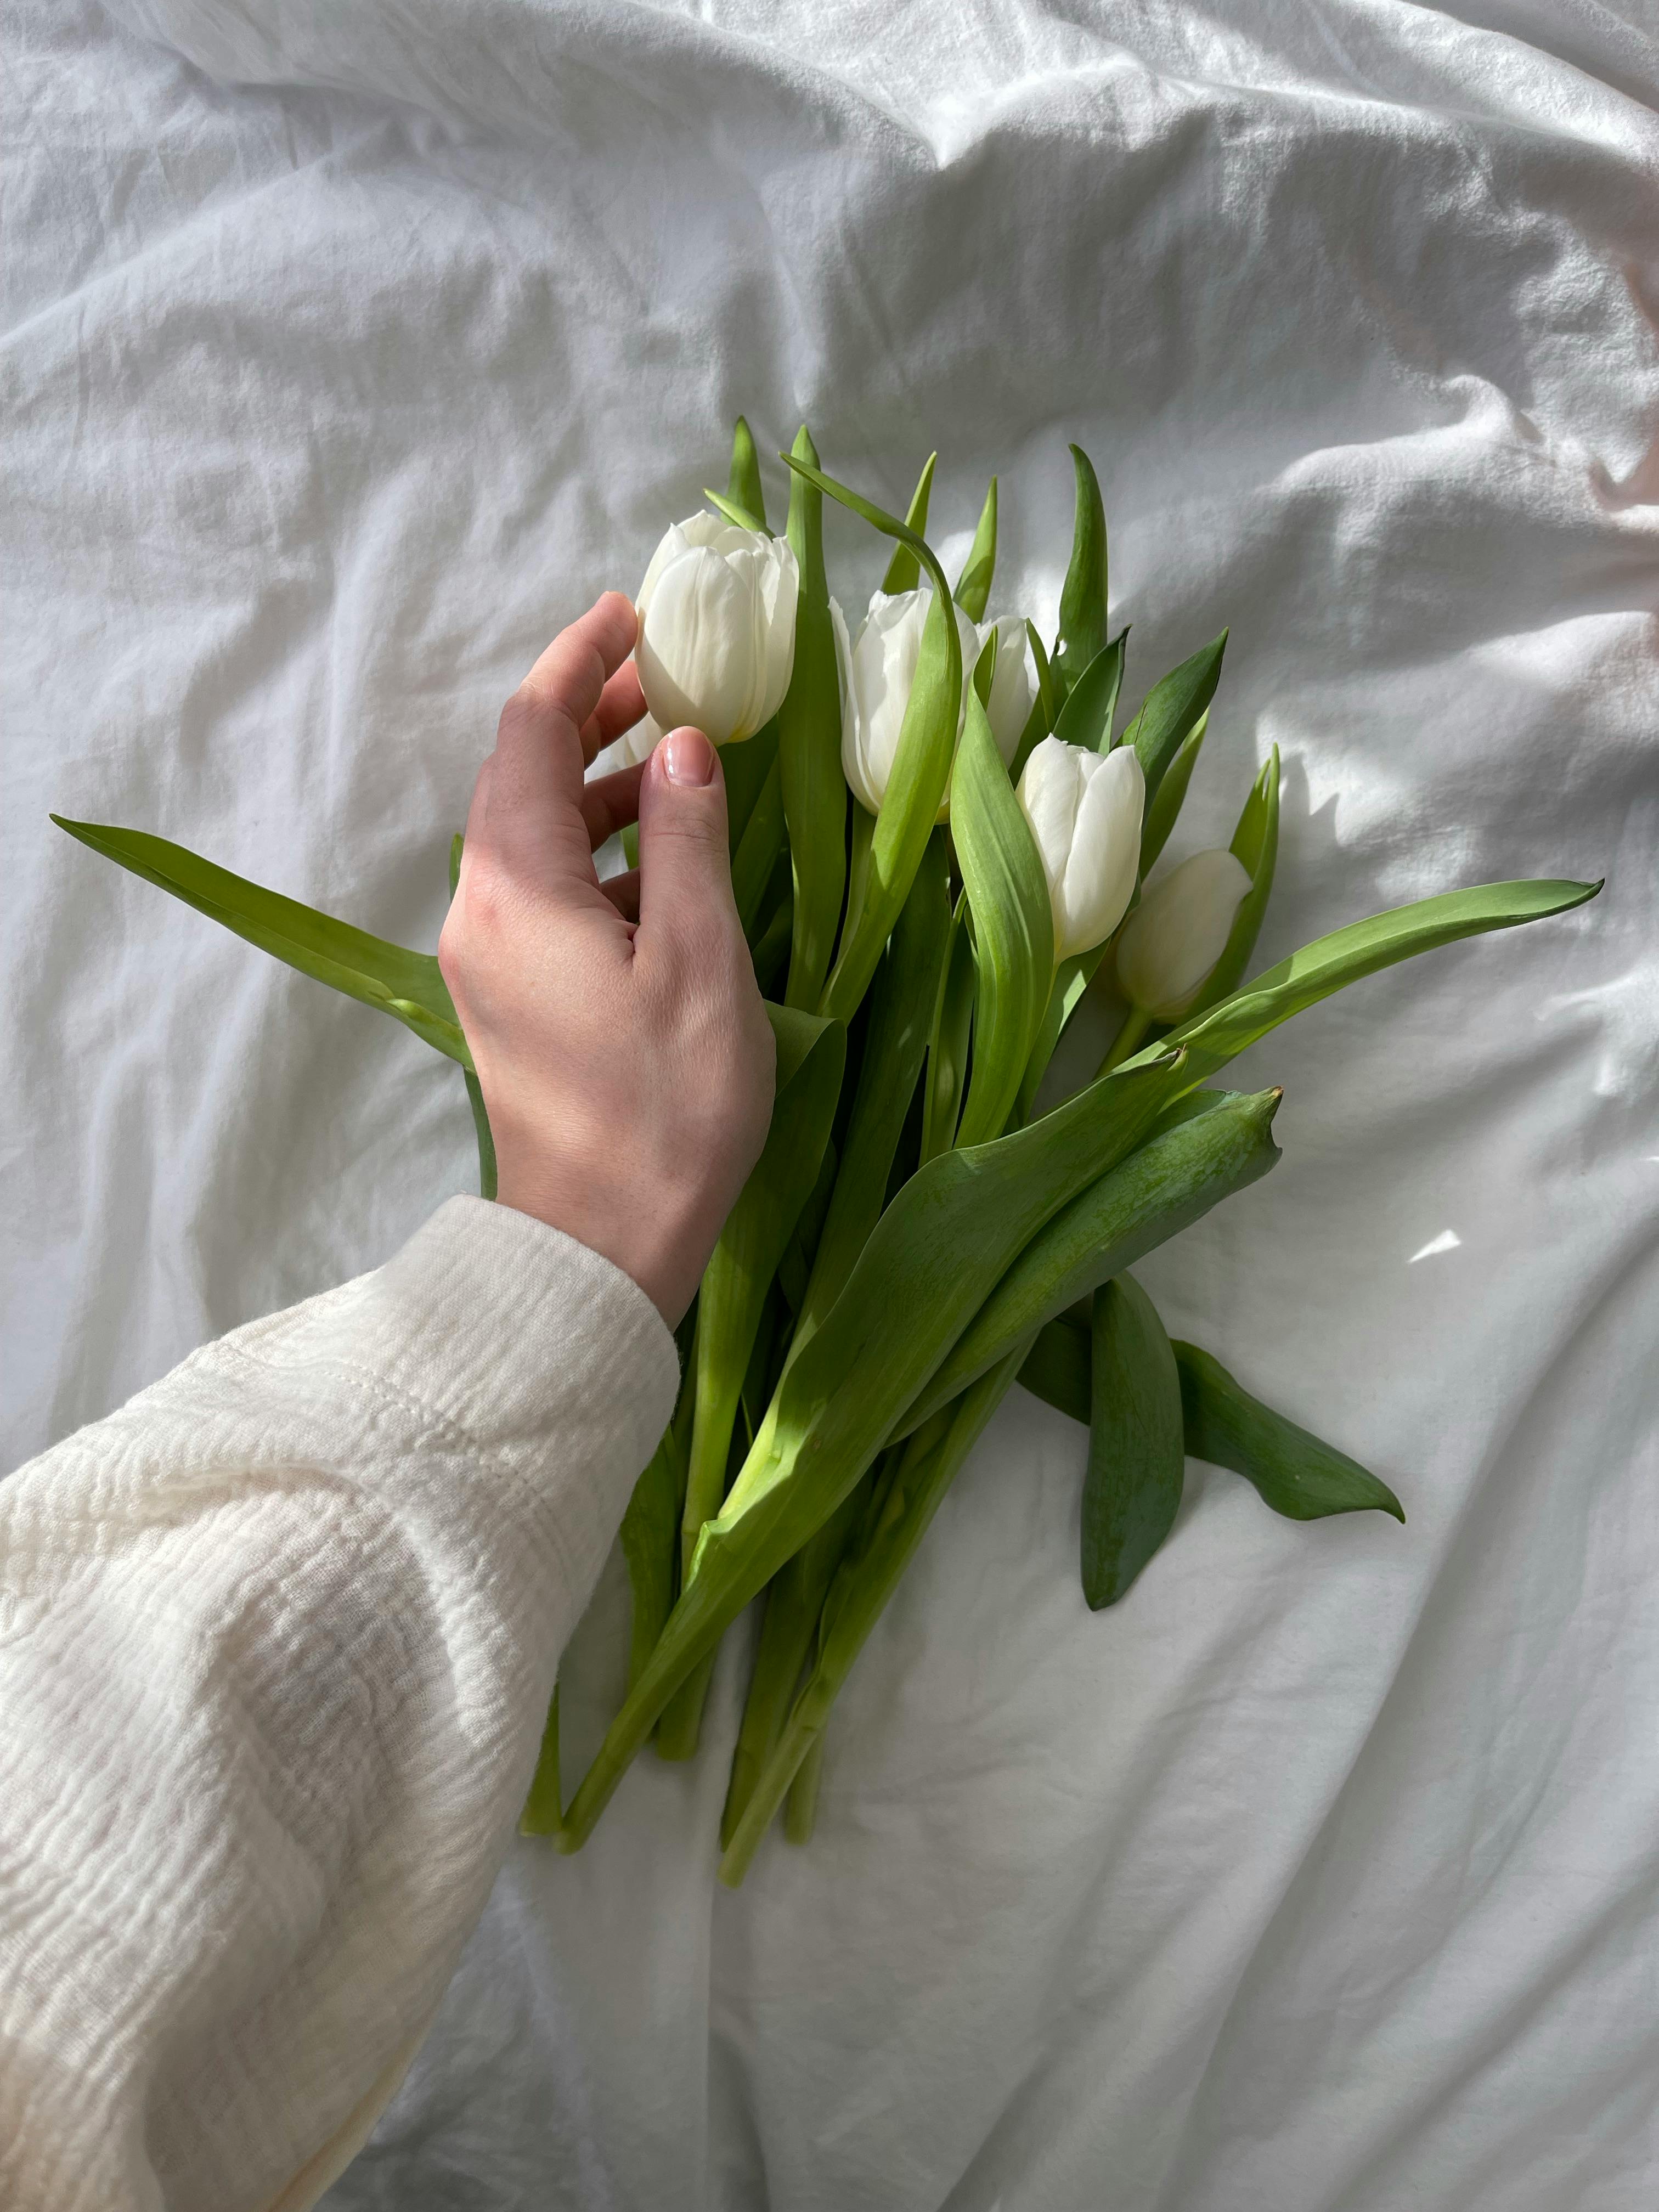 Hoa Tulip Trắng: Hãy cùng ngắm nhìn vẻ đẹp tuyệt vời của hoa Tulip Trắng, loại hoa này đã trở thành biểu tượng của sự tinh khiết và thanh lịch. Màu sắc trắng ngần của hoa Tulip sẽ mang lại cho bạn cảm giác tươi trẻ, sạch sẽ và tinh khiết. Hãy đón xem hình ảnh để trải nghiệm vẻ đẹp ấn tượng của hoa Tulip Trắng.